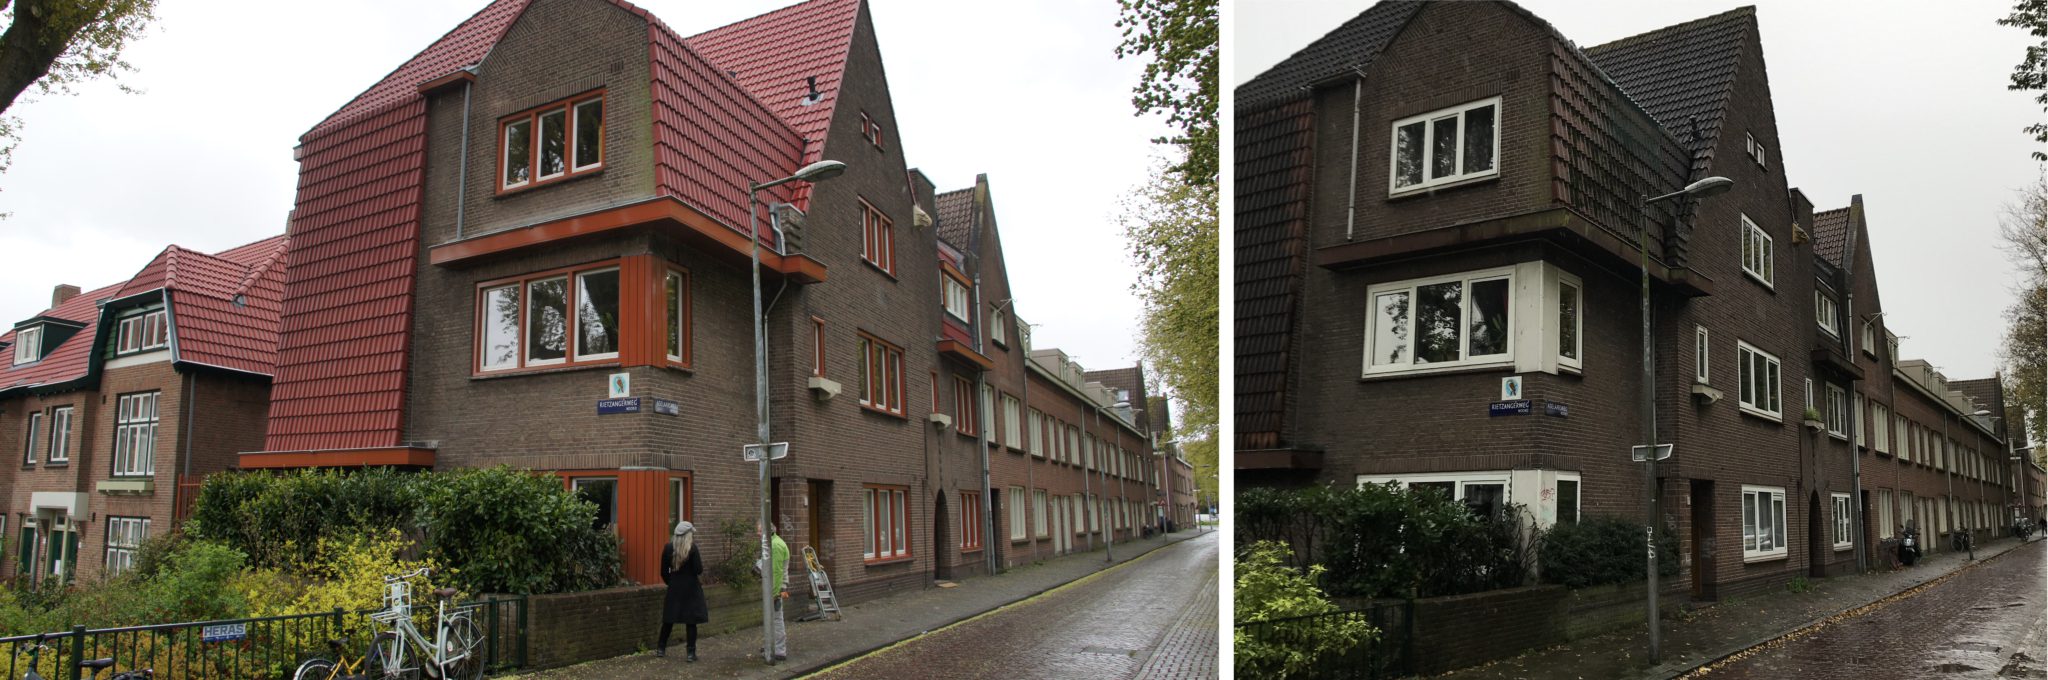 Vogelbuurt, Amsterdam - Adelaarsweg (nieuw versus oud)